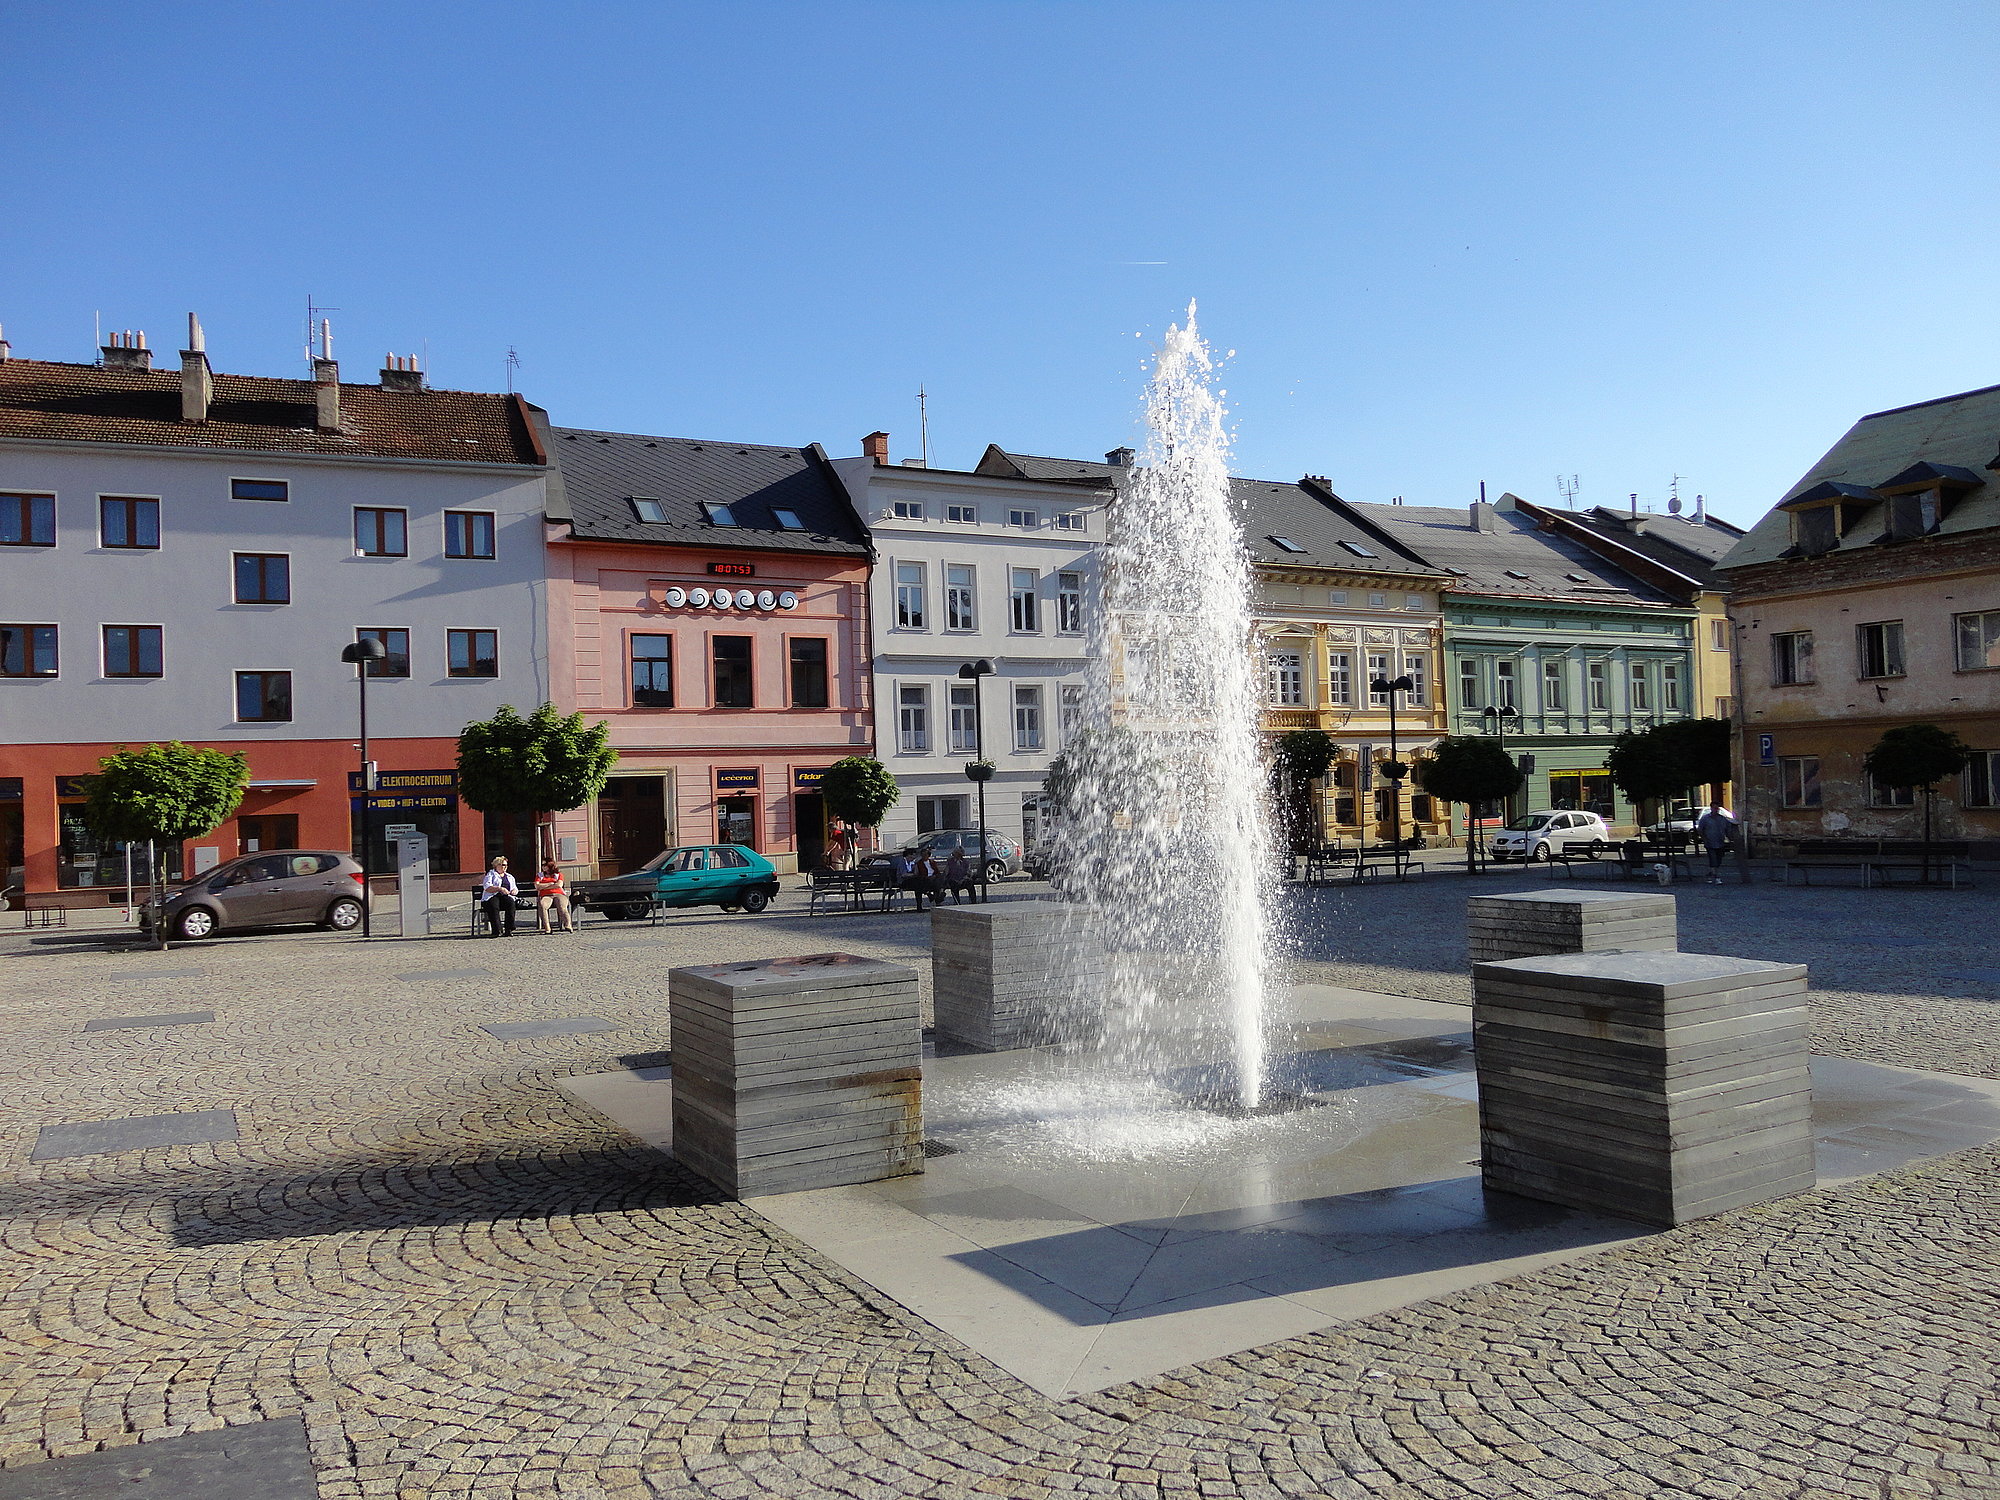 Marktplatzbrunnen in Sternberk. Foto: Manfred Proksch